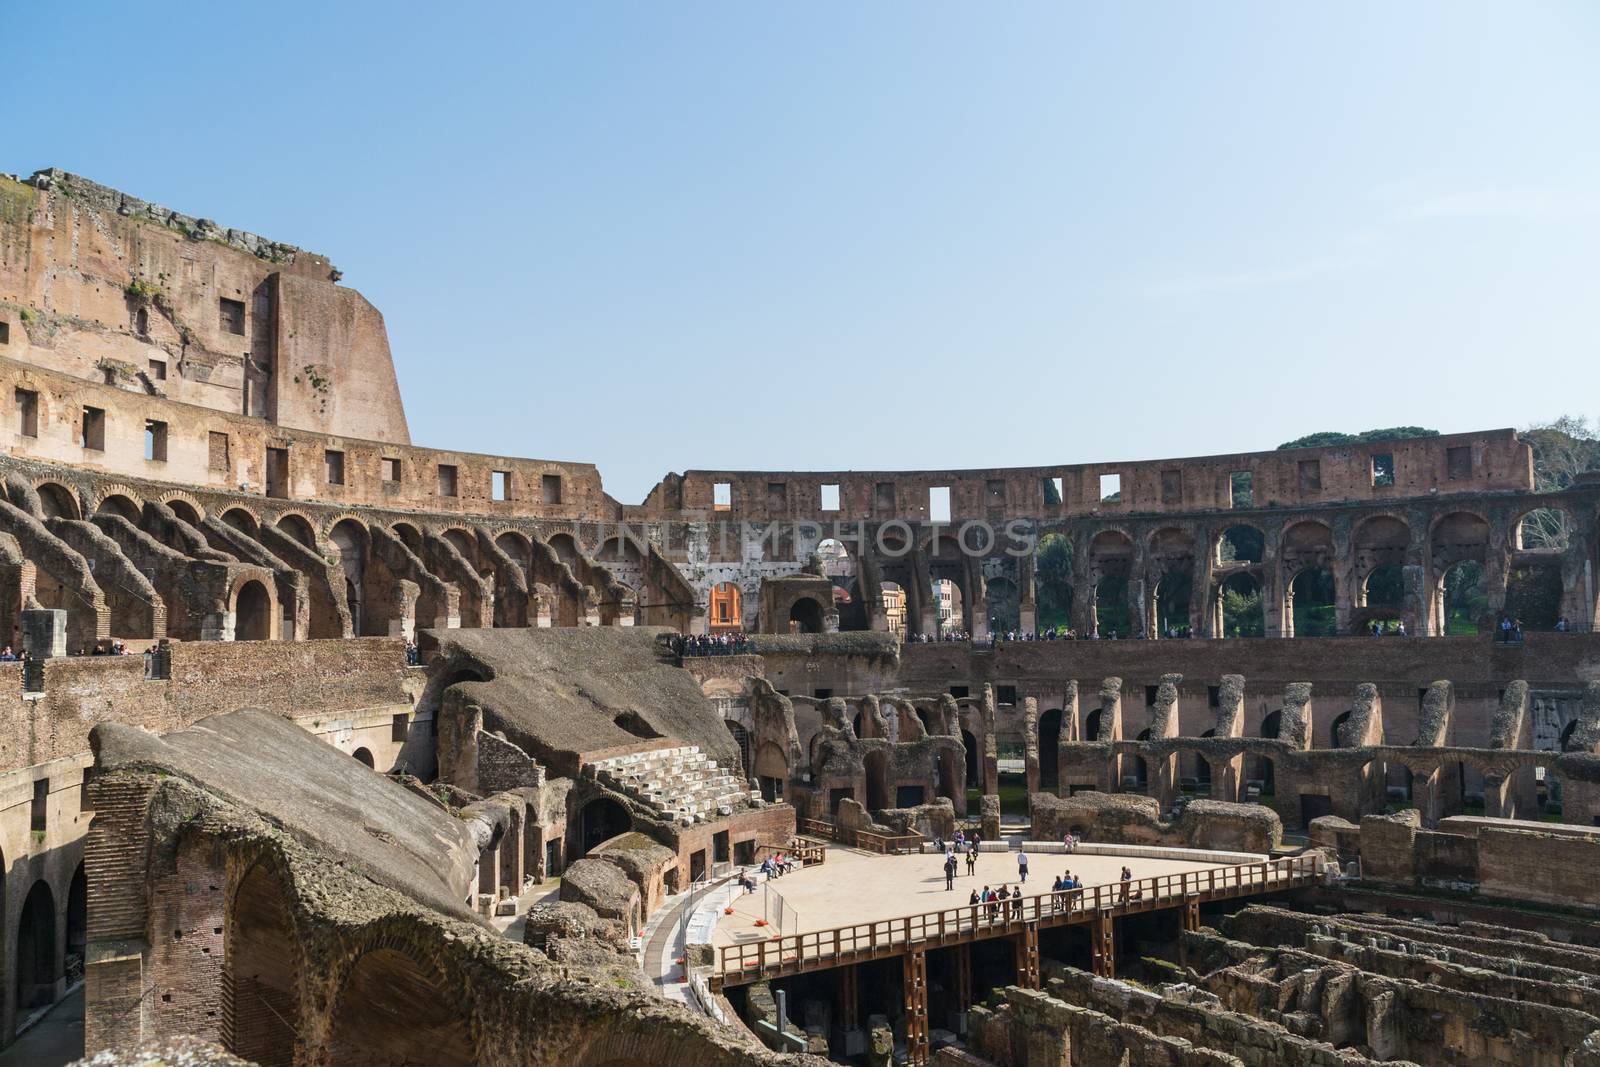 The Colosseum ruins by rosariomanzo